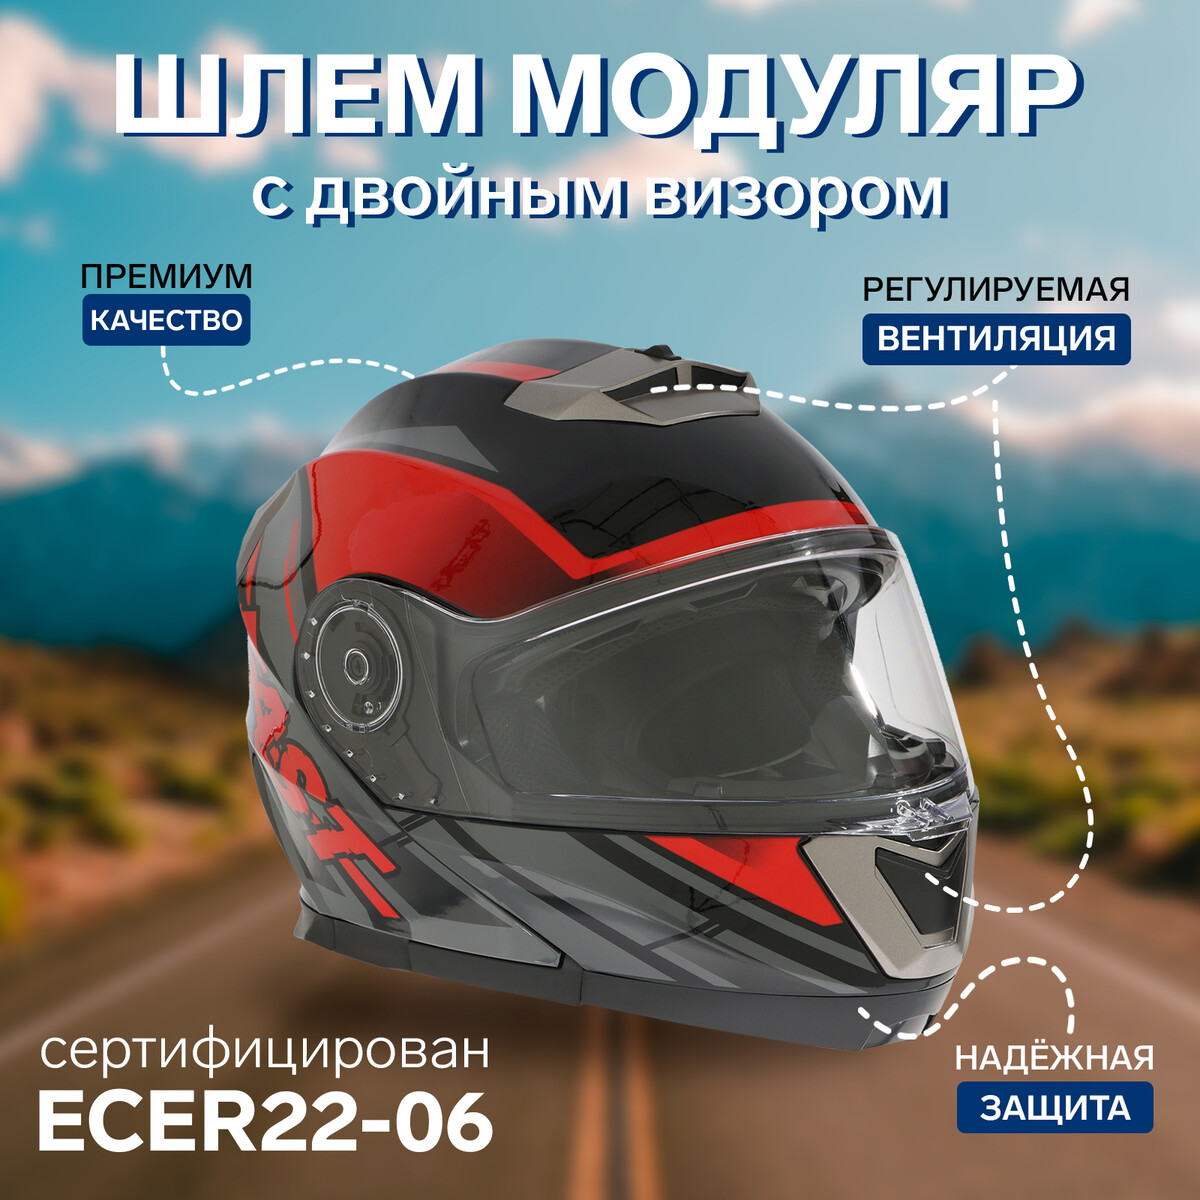 Шлем модуляр с двумя визорами, размер xl (60-61), модель - bld-160e, черно-красный щиток защитный welder визор лайт эластичное оголовье